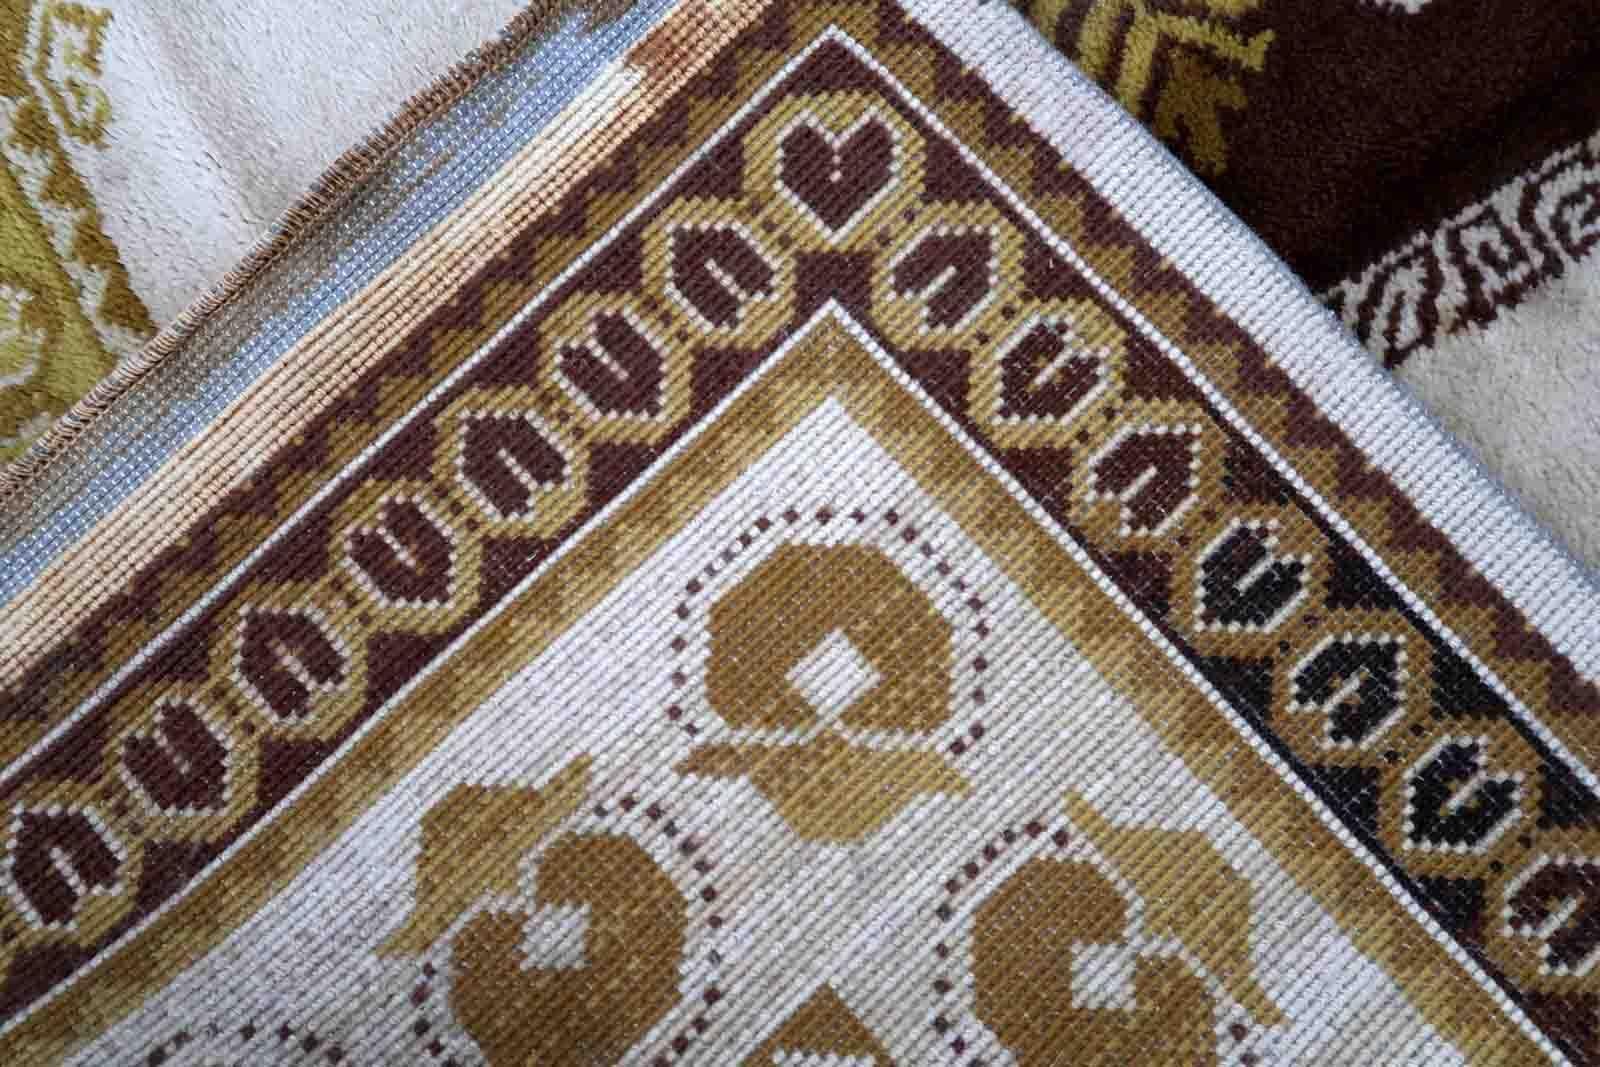 Französischer Vintage-Savonnerie-Teppich in Beige-, Braun- und Goldtönen. Der Teppich stammt aus der Mitte des 20. Jahrhunderts und ist in gutem Originalzustand.

-Zustand: original gut,

-CIRCA: 1950er Jahre,

-Größe: 7,9' x 11,4' (242cm x